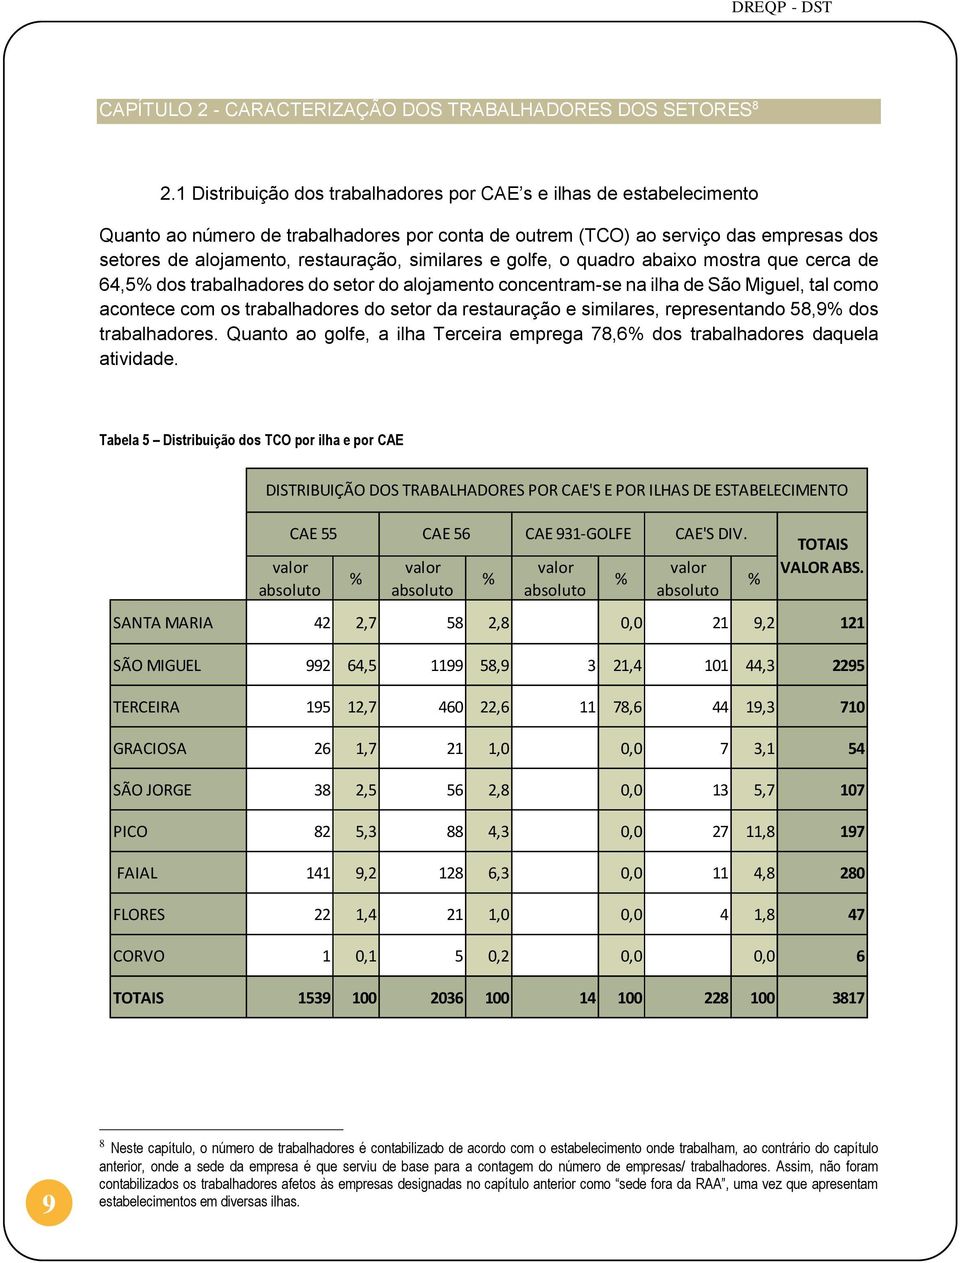 similares e golfe, o quadro abaixo mostra que cerca de 64,5% dos trabalhadores do setor do alojamento concentram-se na ilha de São Miguel, tal como acontece com os trabalhadores do setor da